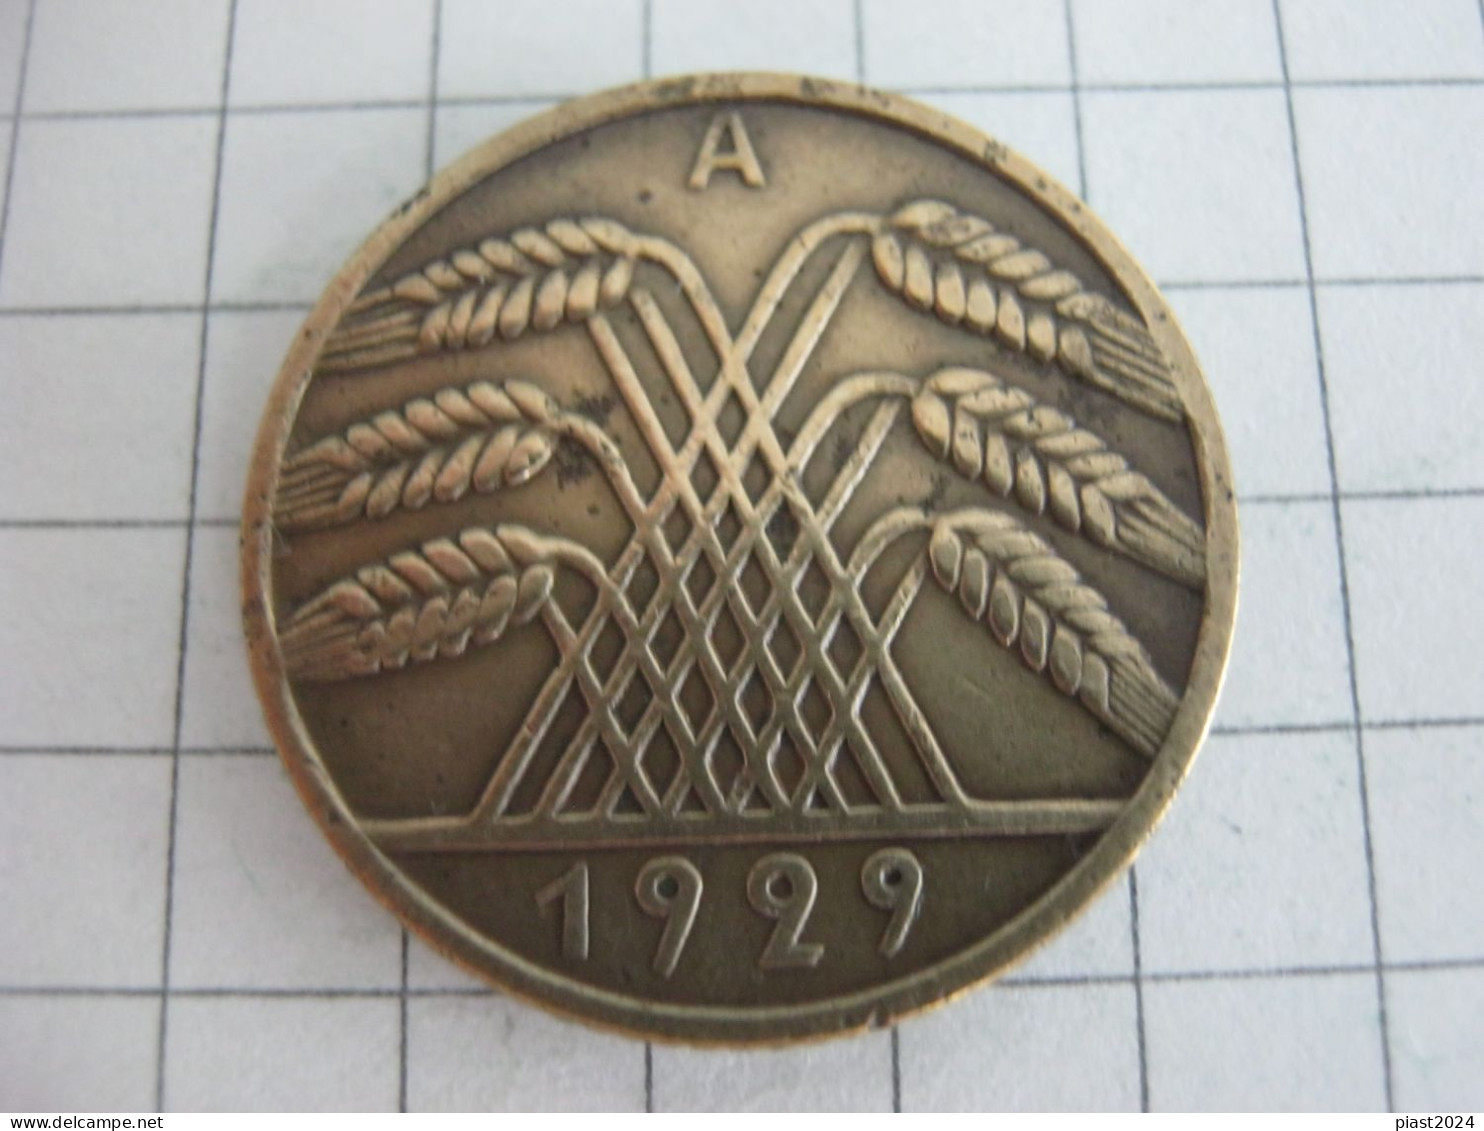 Germany 10 Reichspfennig 1929 A - 10 Rentenpfennig & 10 Reichspfennig